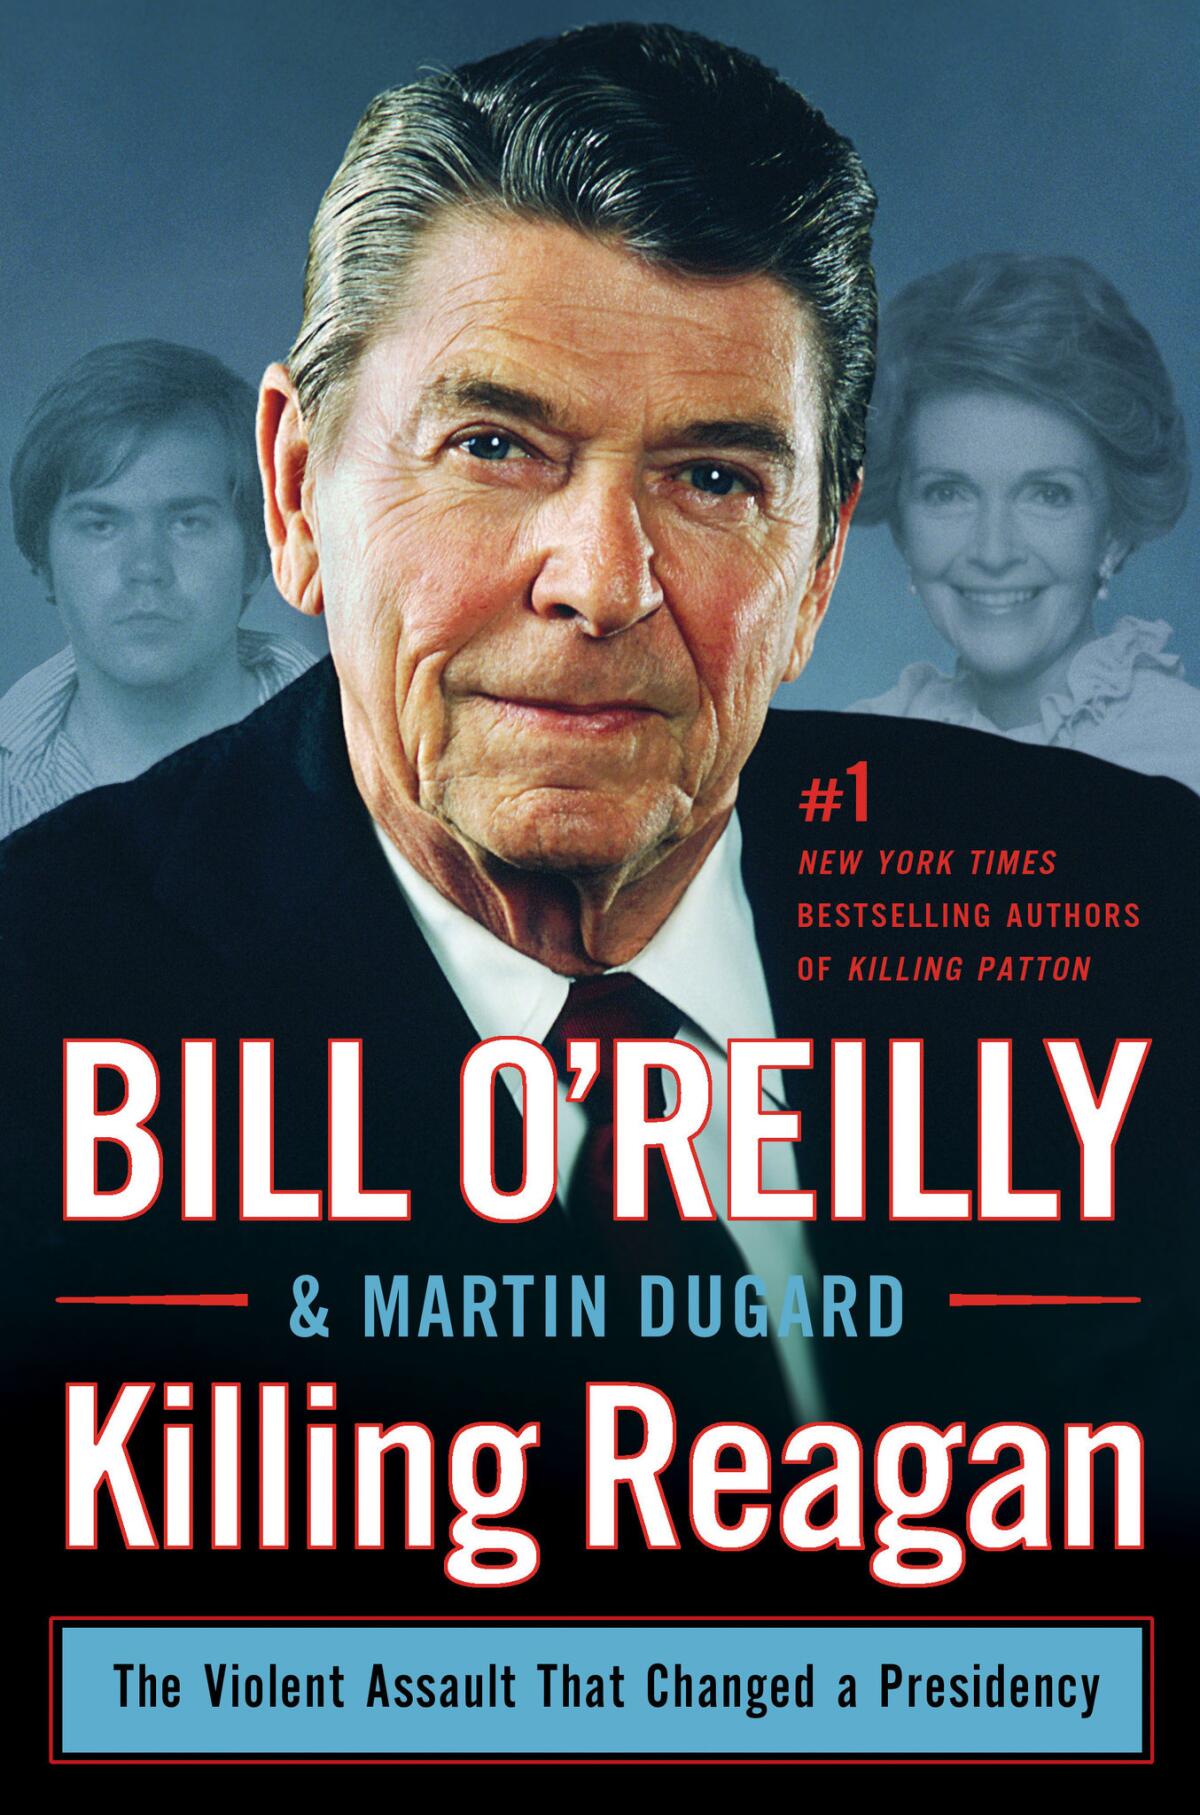 "Killing Reagan" by Bill O'Reilly